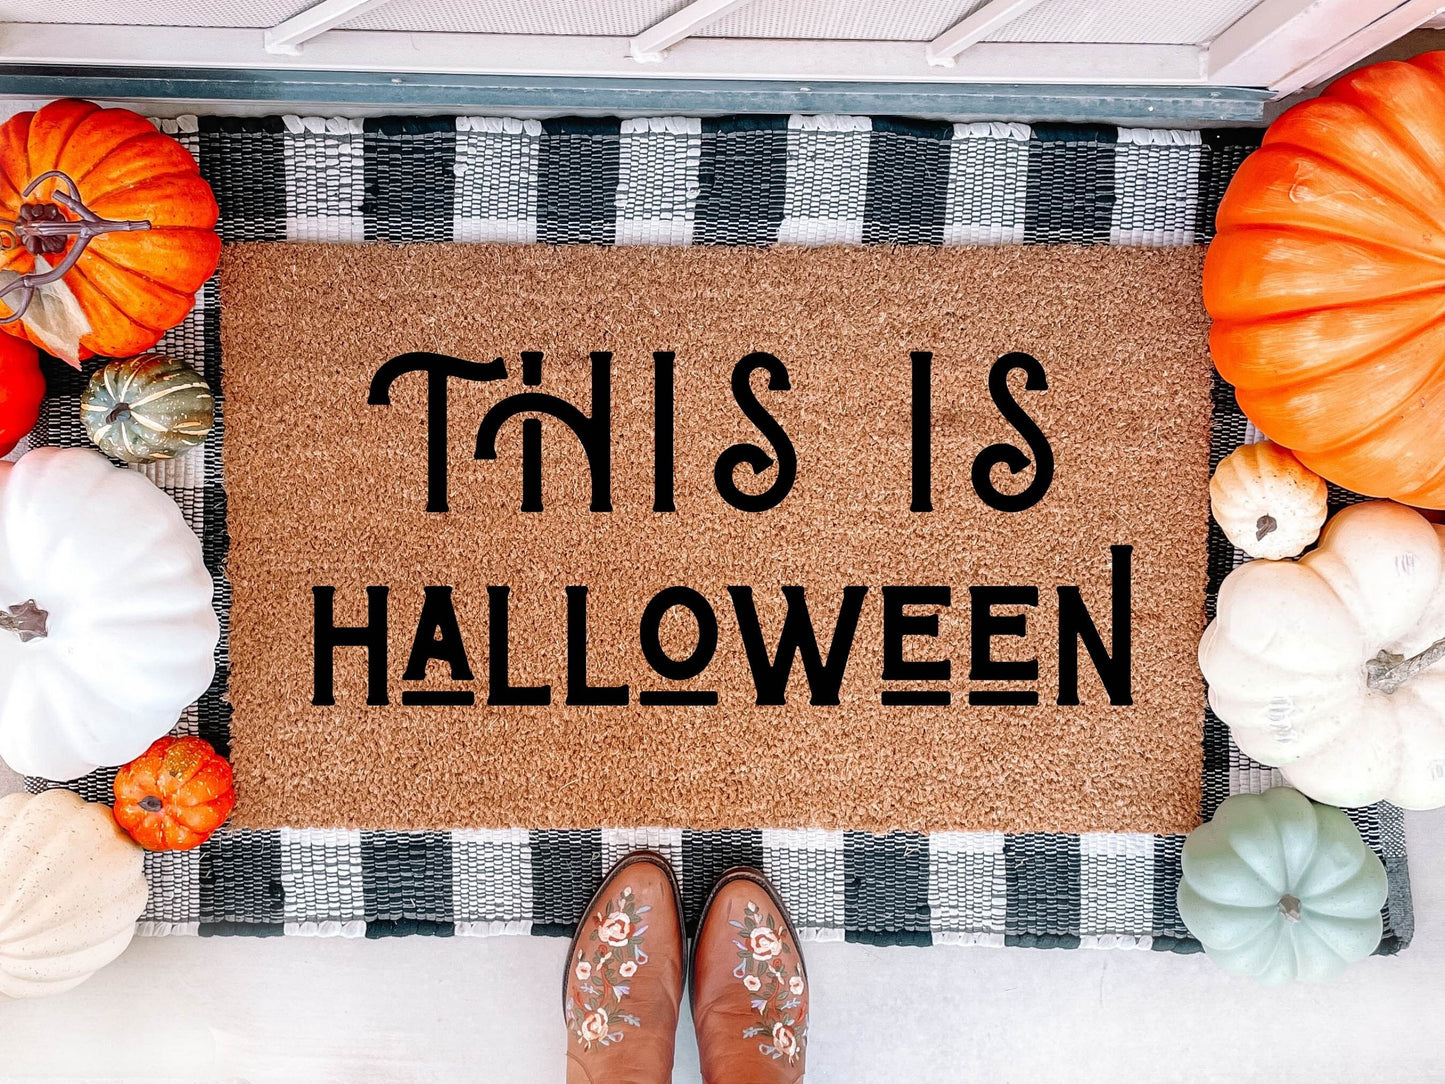 This is Halloween Doormat